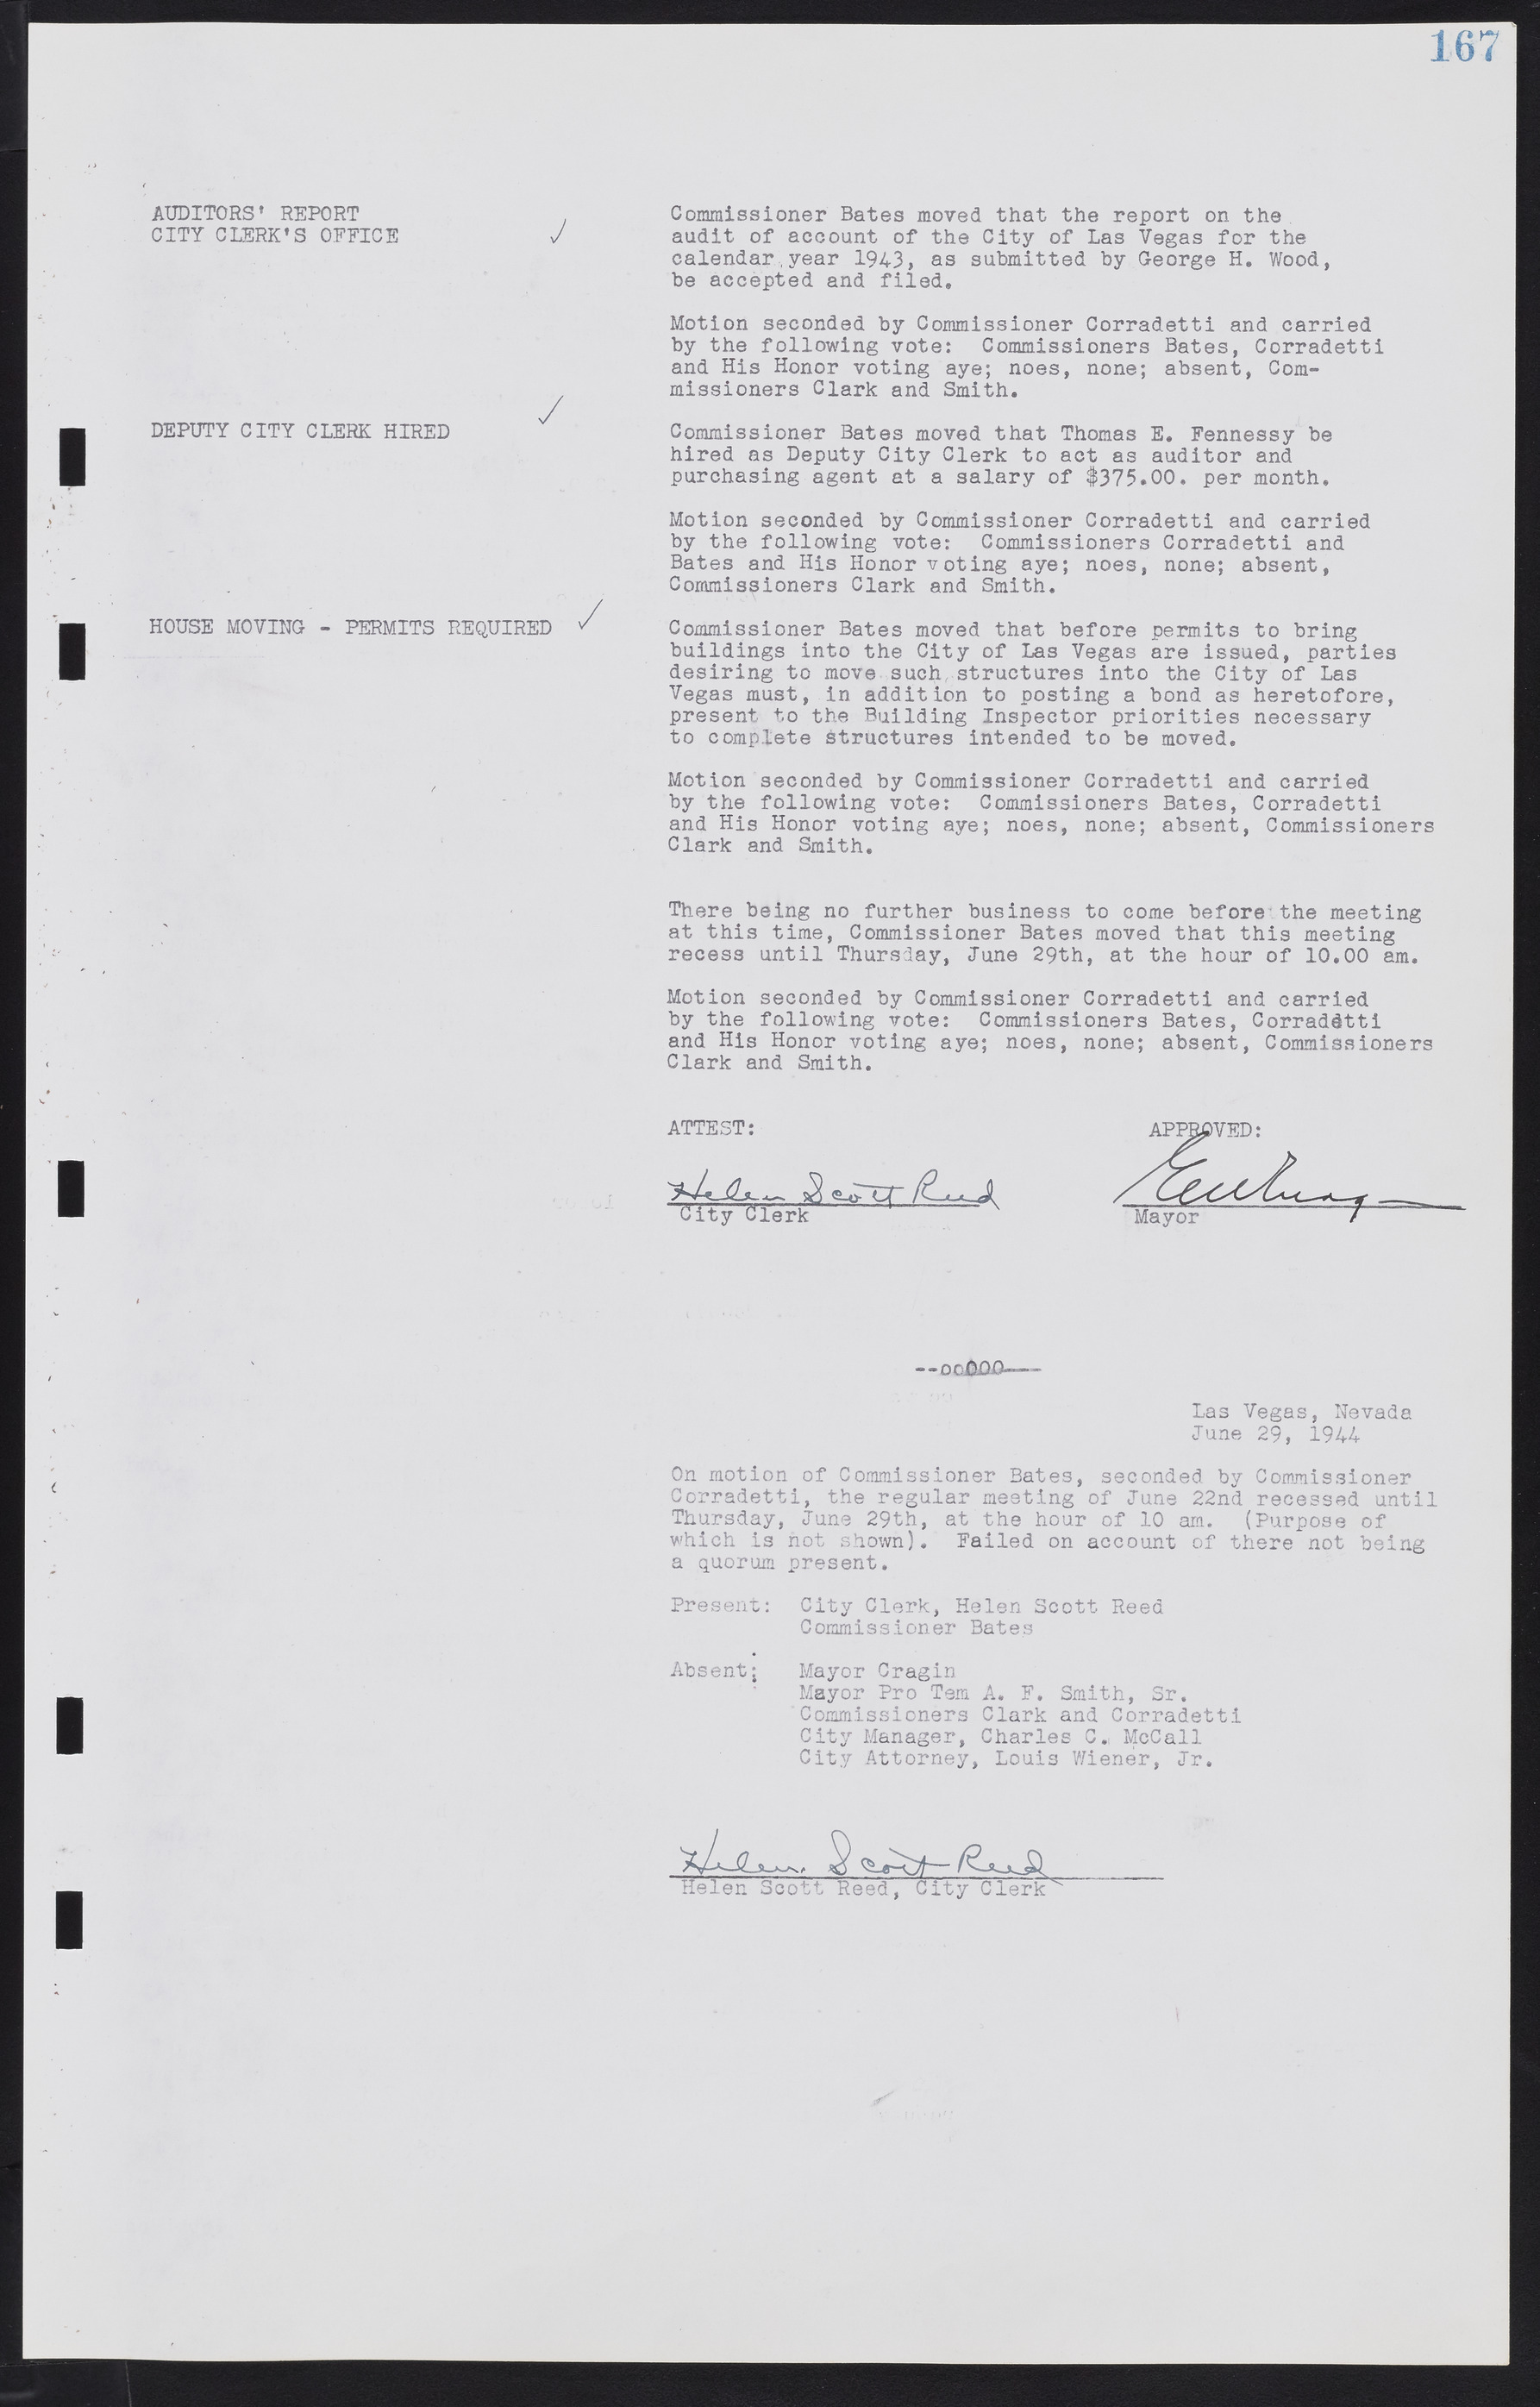 Las Vegas City Commission Minutes, August 11, 1942 to December 30, 1946, lvc000005-184